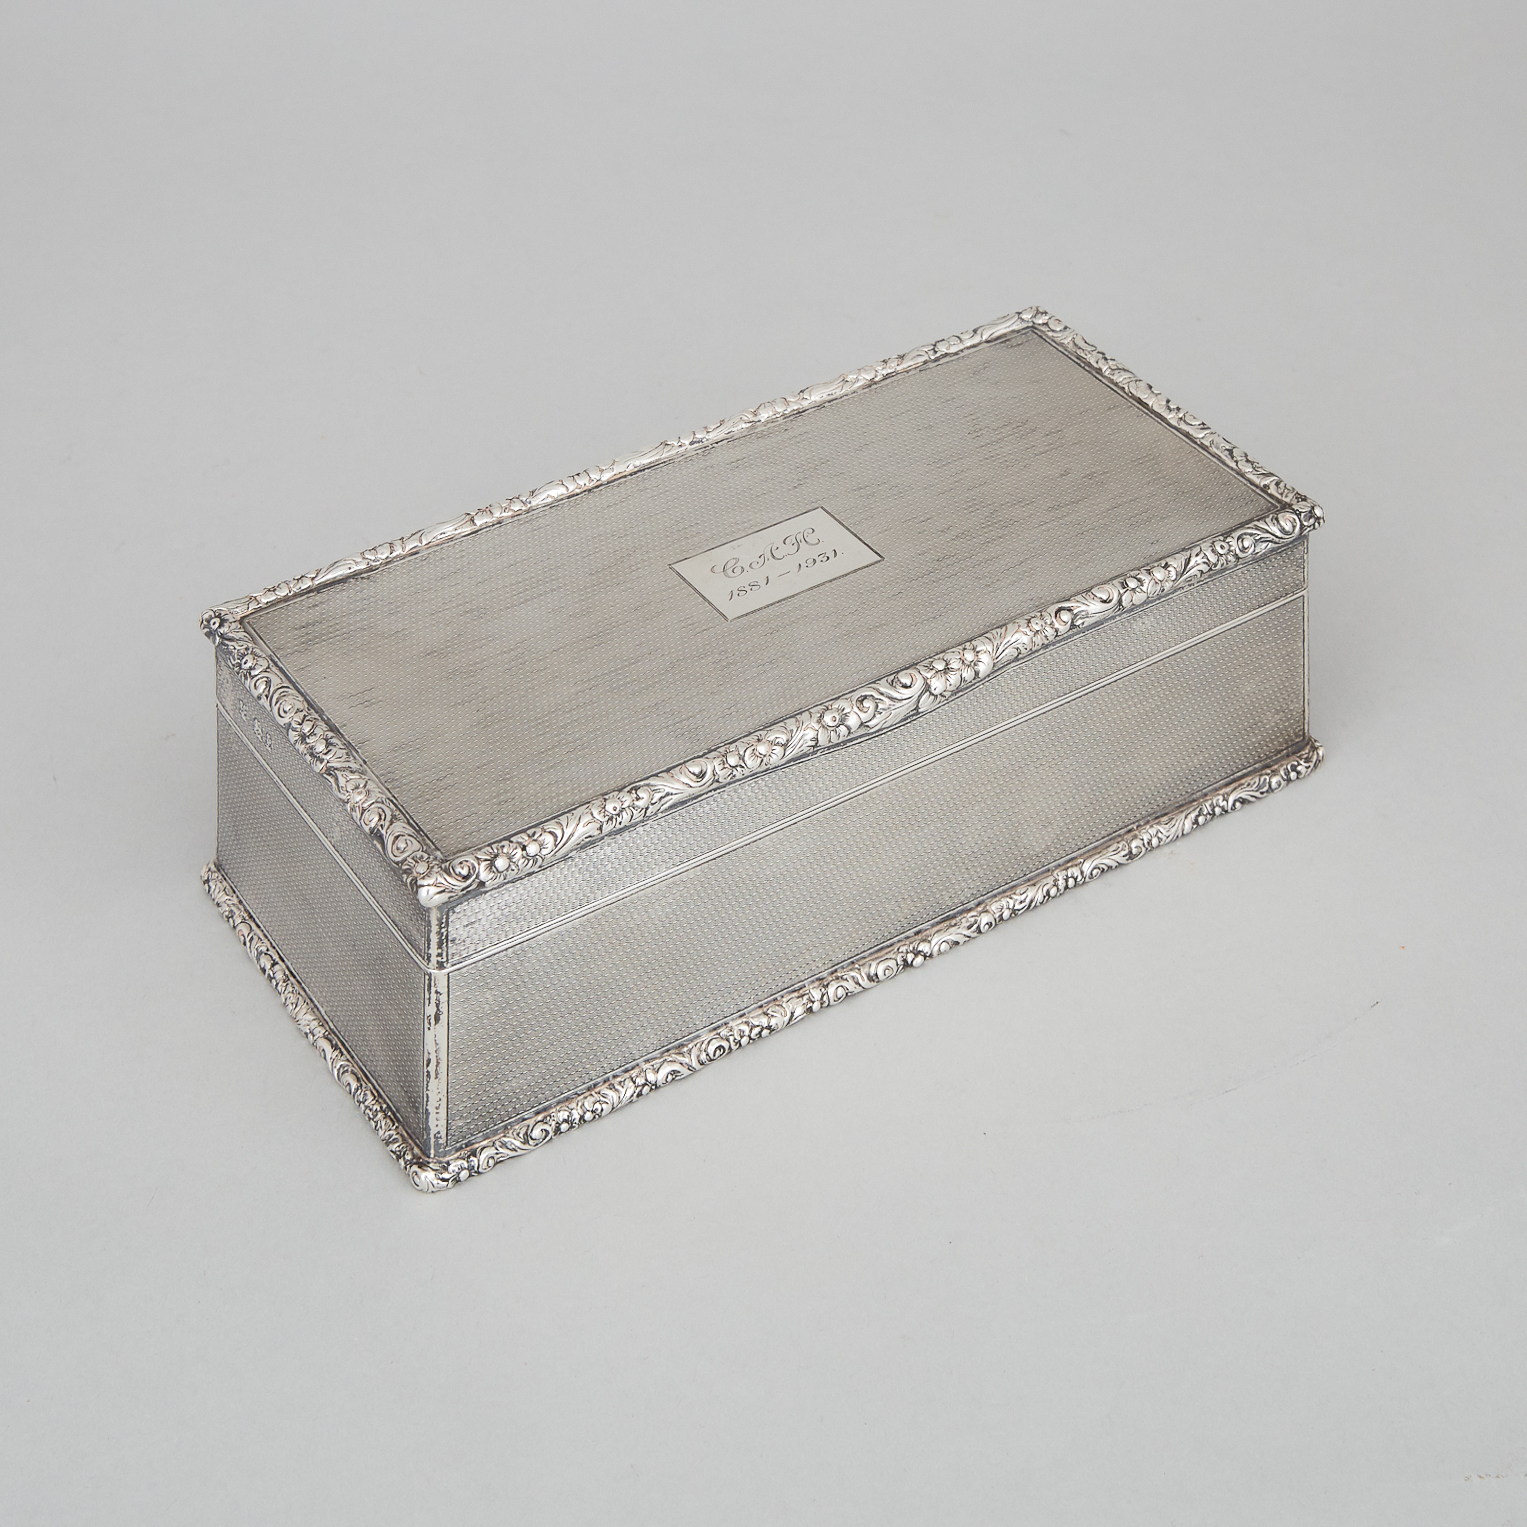 English Silver Cigarette Box, William Comyns & Sons, London, 1930